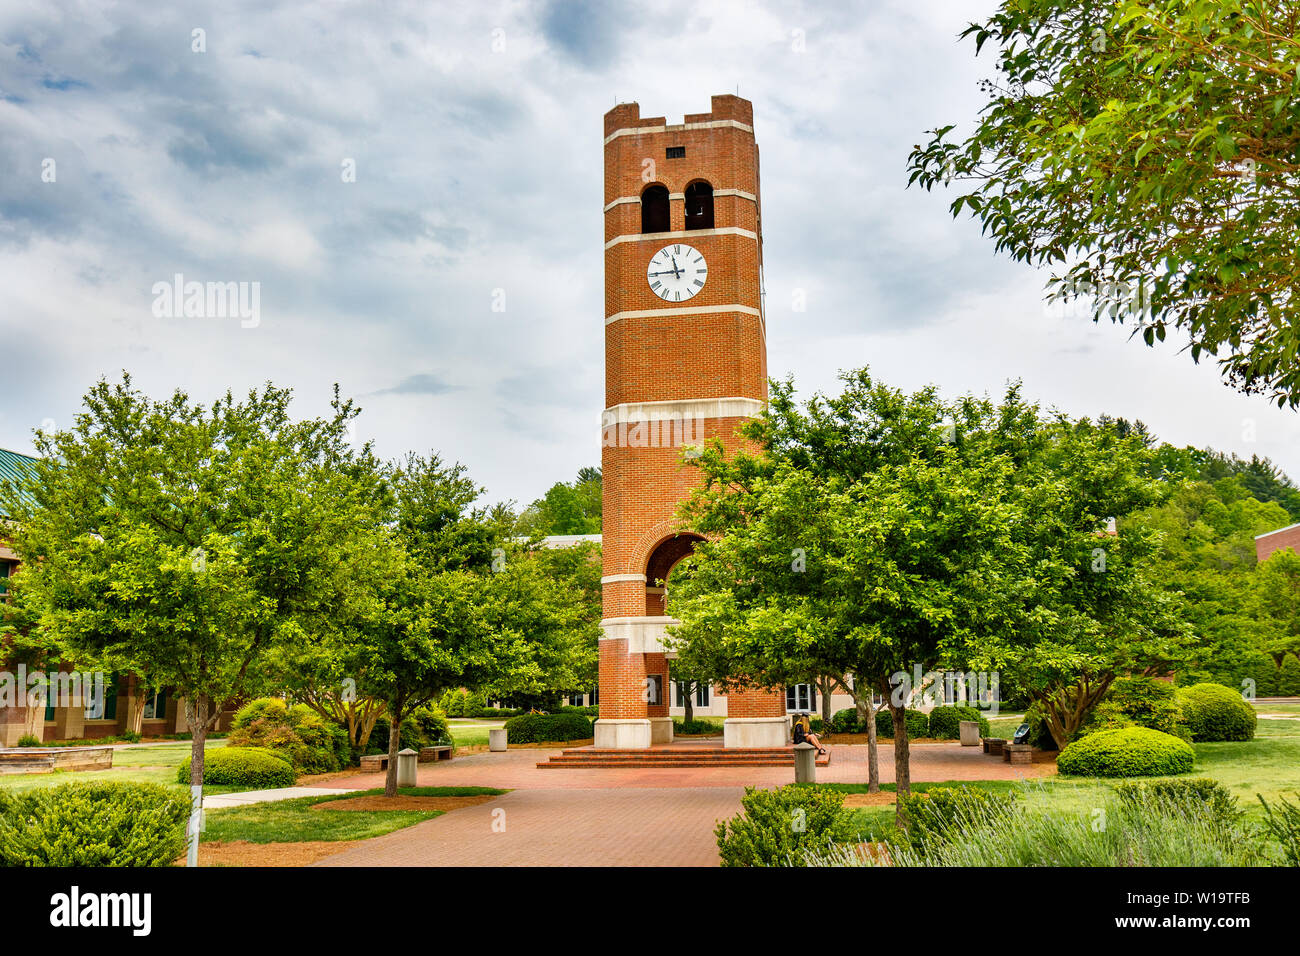 CULLOWHEE, NC, Stati Uniti d'America - 4 maggio: Alumni Tower il 4 maggio 2019 presso la Western Carolina Università in Cullowhee, North Carolina. Foto Stock